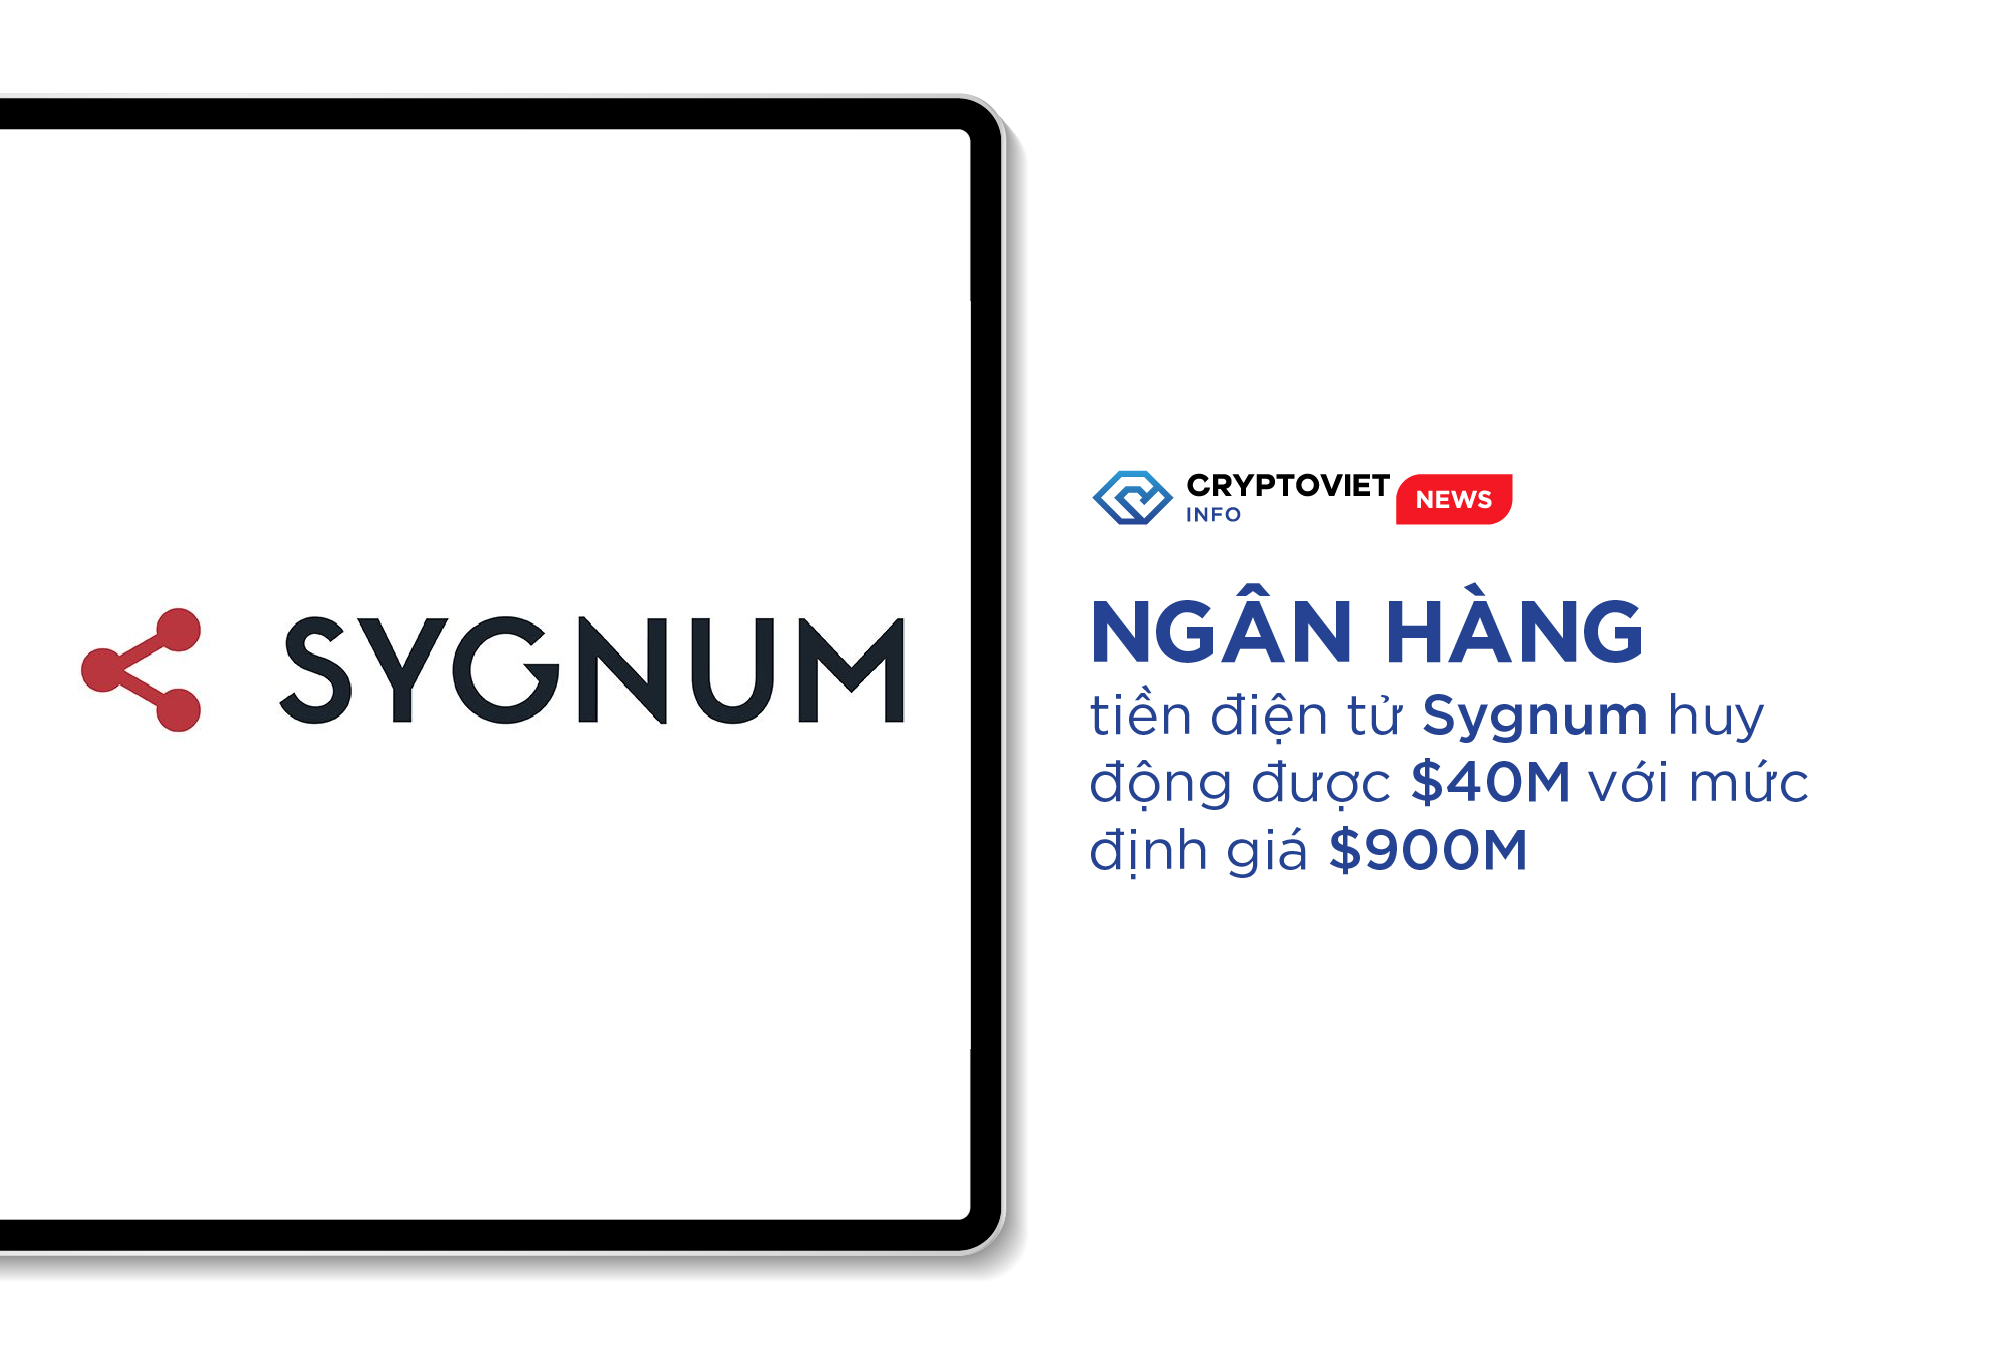 Ngân hàng tiền điện tử Sygnum huy động được $40M với mức định giá $900M